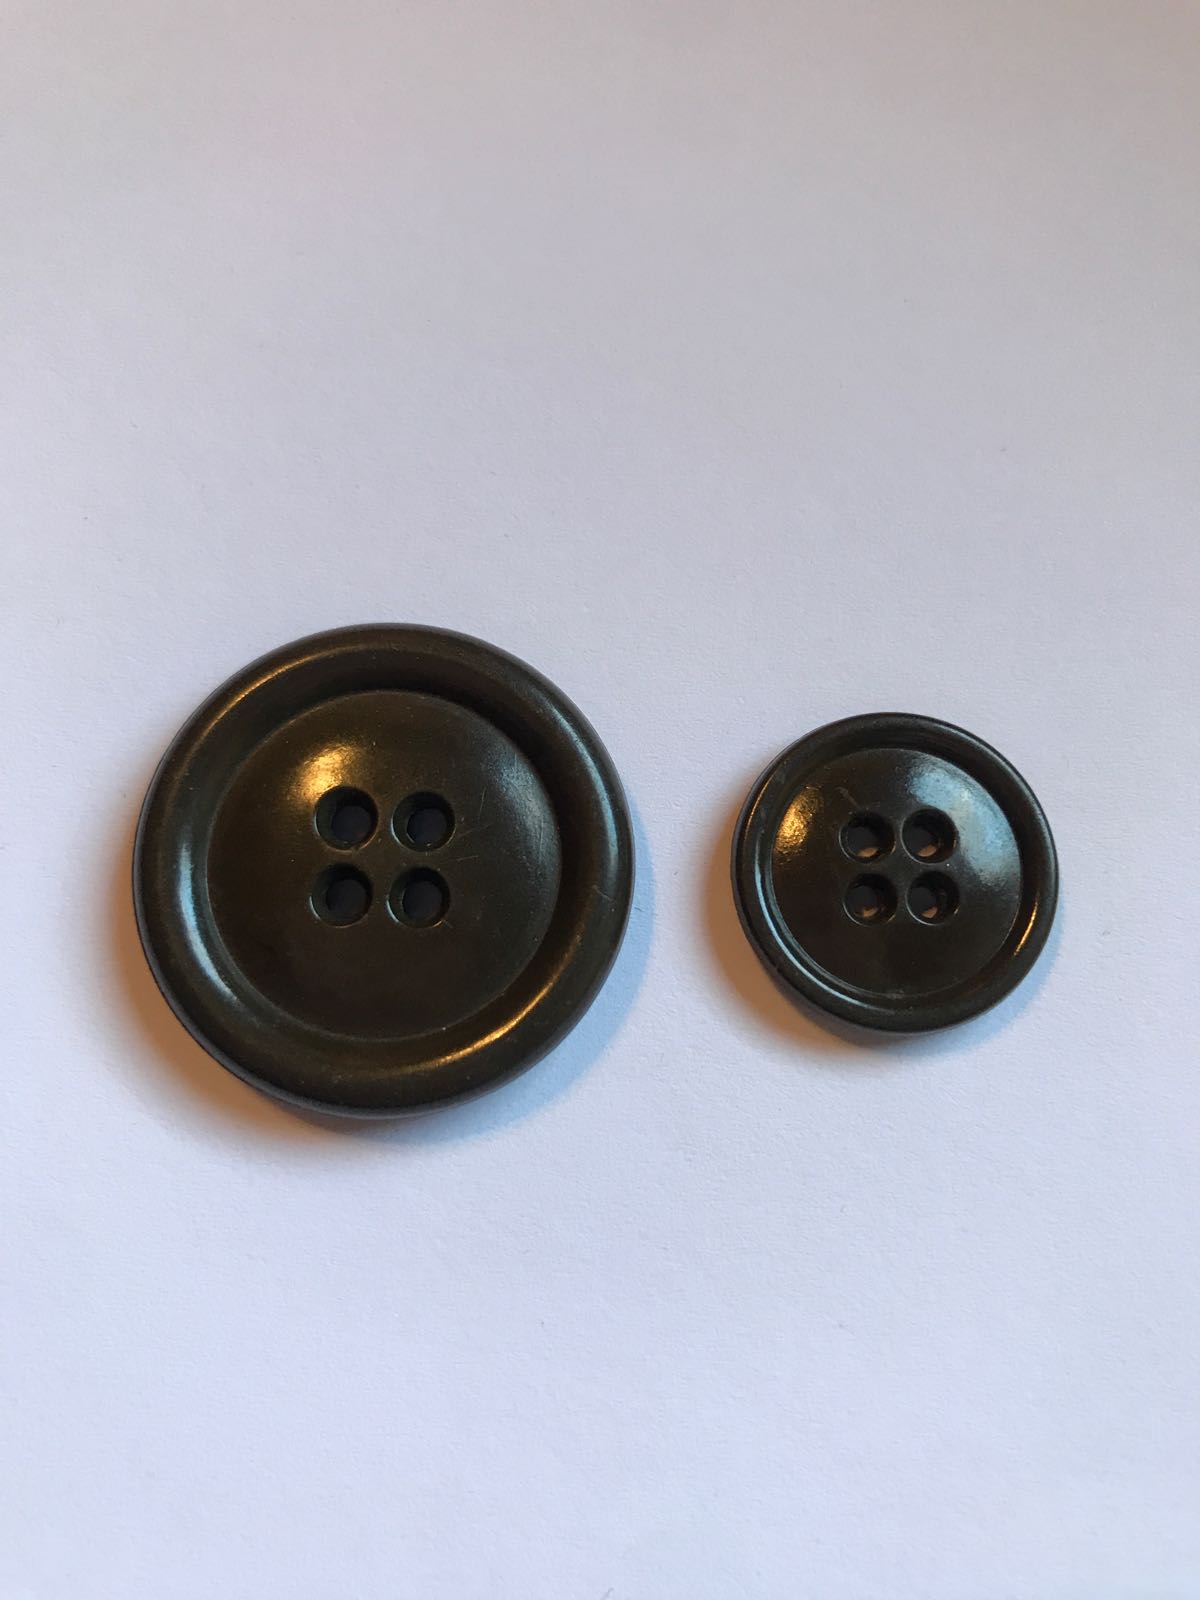 Vintage plastic button